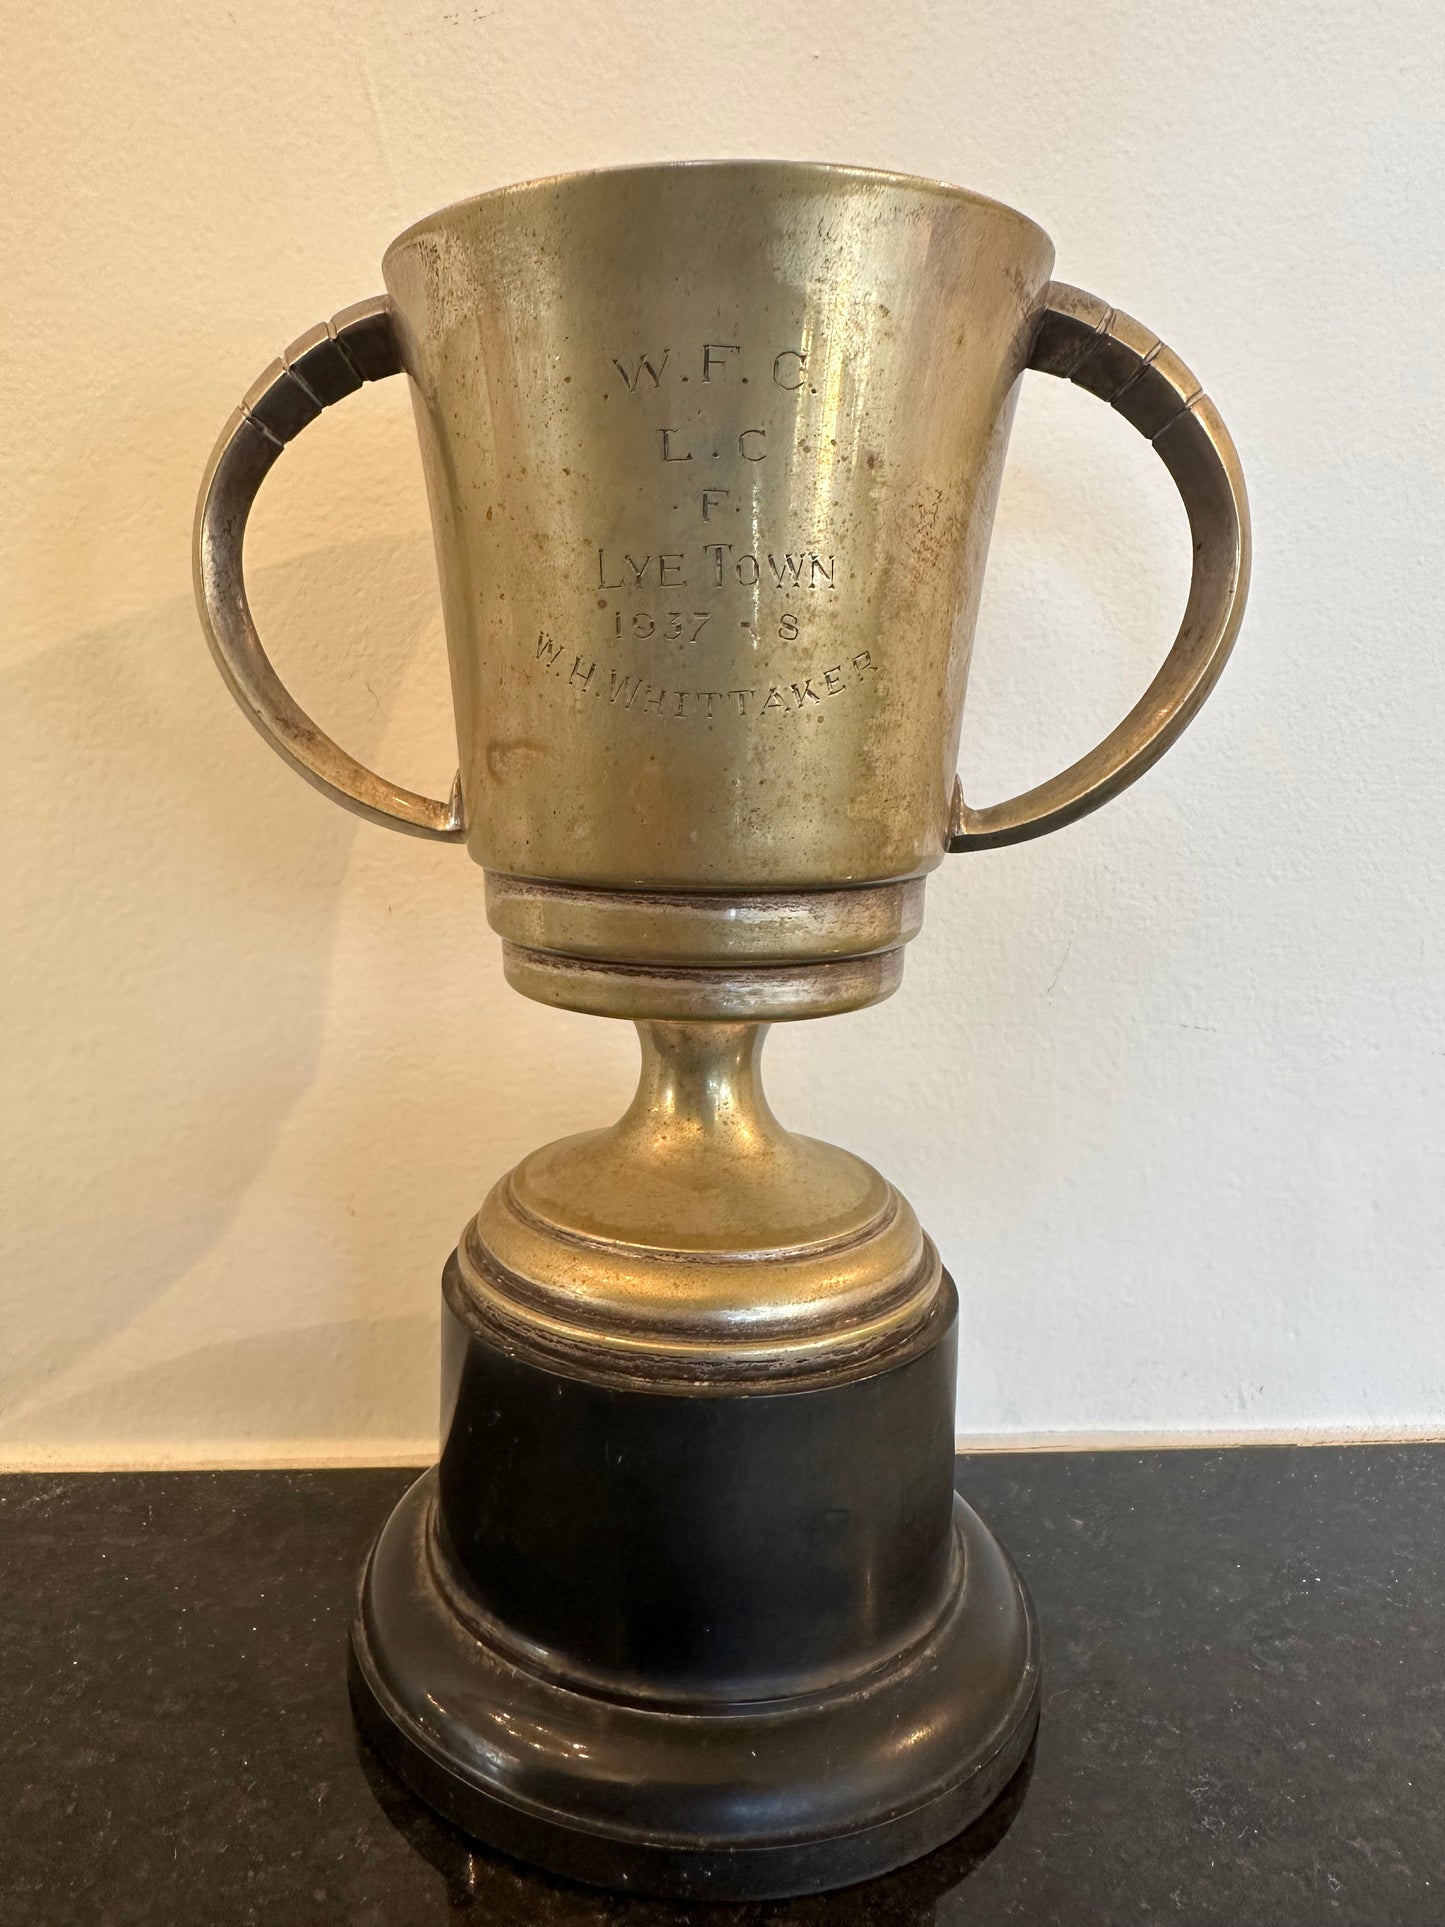 W.F.C. Silver Trophy